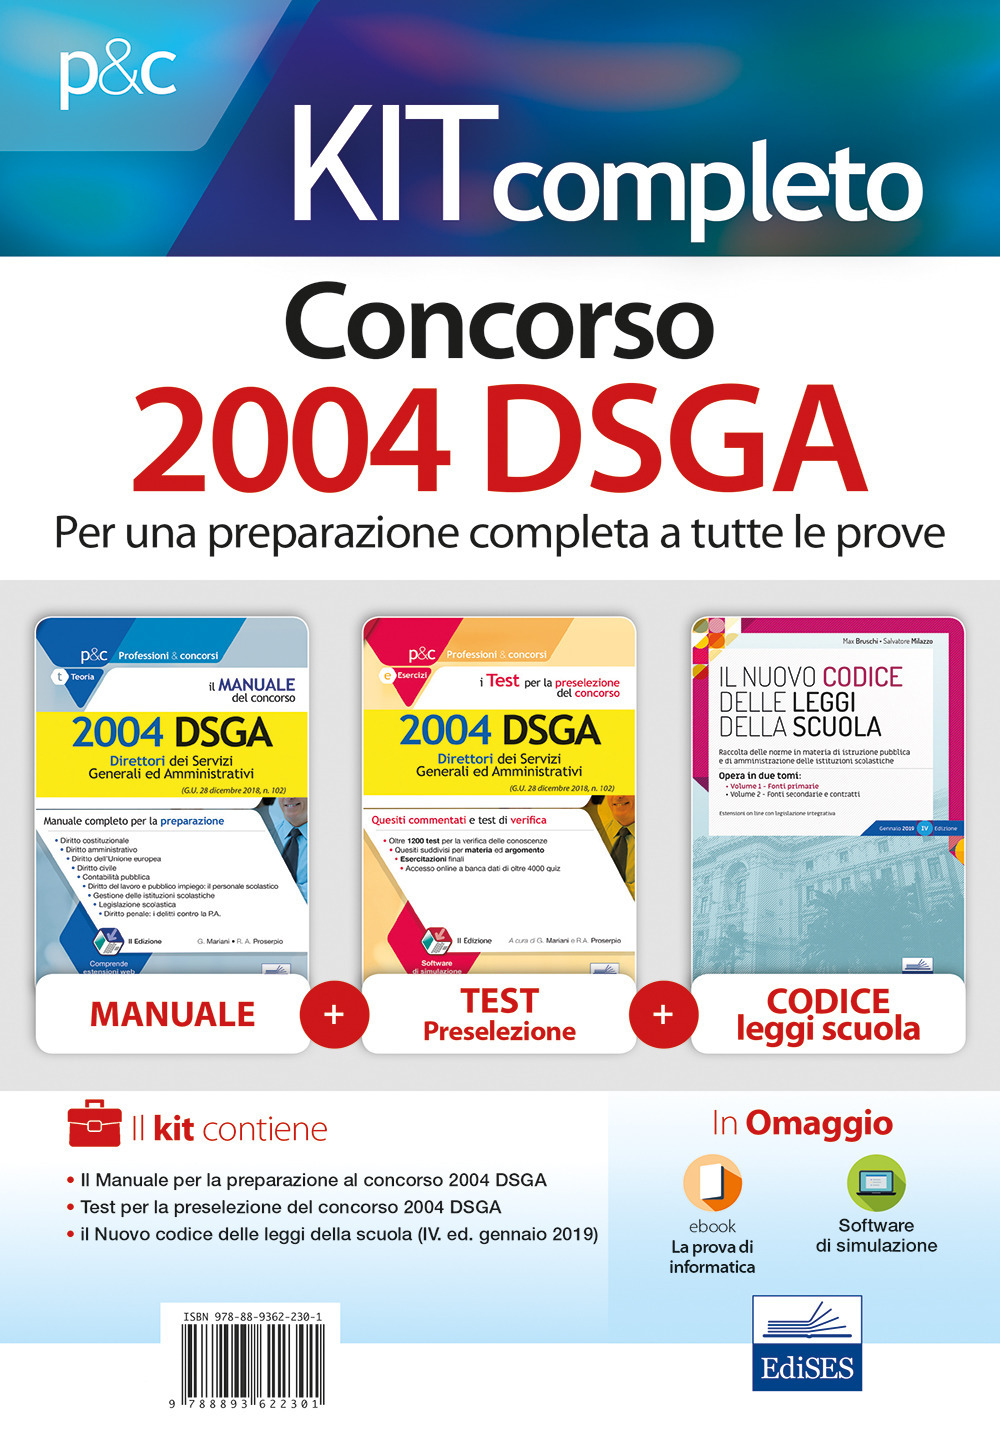 Kit completo concorso 2004 DSGA: Il manuale del concorso. 2004 DSGA-I test per la preselezione del concorso per 2004 DSGA. Quesiti commentati e test di verifica-Il nuovo codice delle leggi della scuola. Con e-book. Con software di simulazione